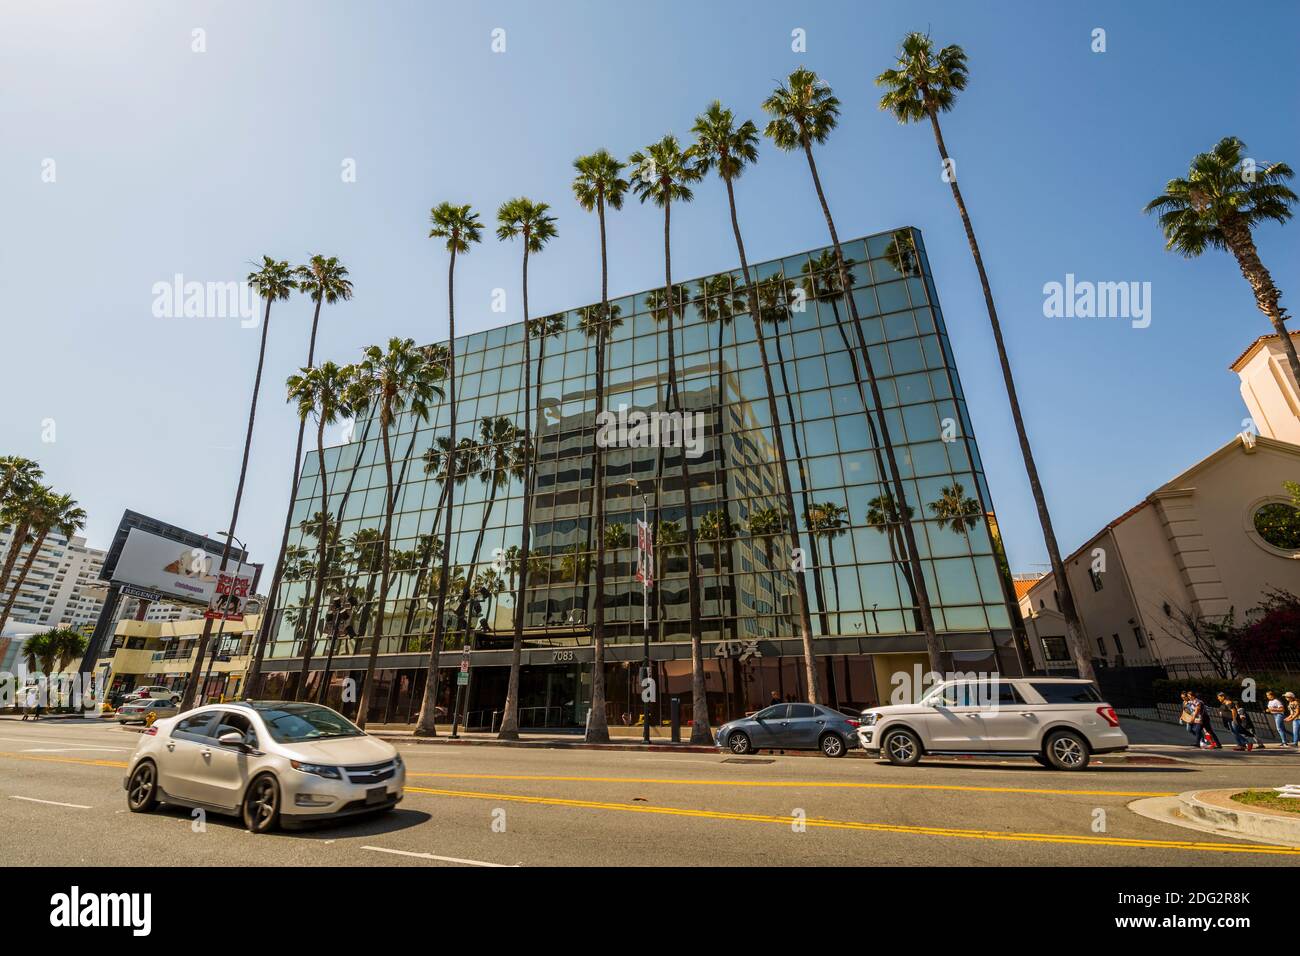 Vue sur les palmiers et l'architecture contemporaine sur Hollywood Boulevard, Los Angeles, Californie, États-Unis d'Amérique, Amérique du Nord Banque D'Images